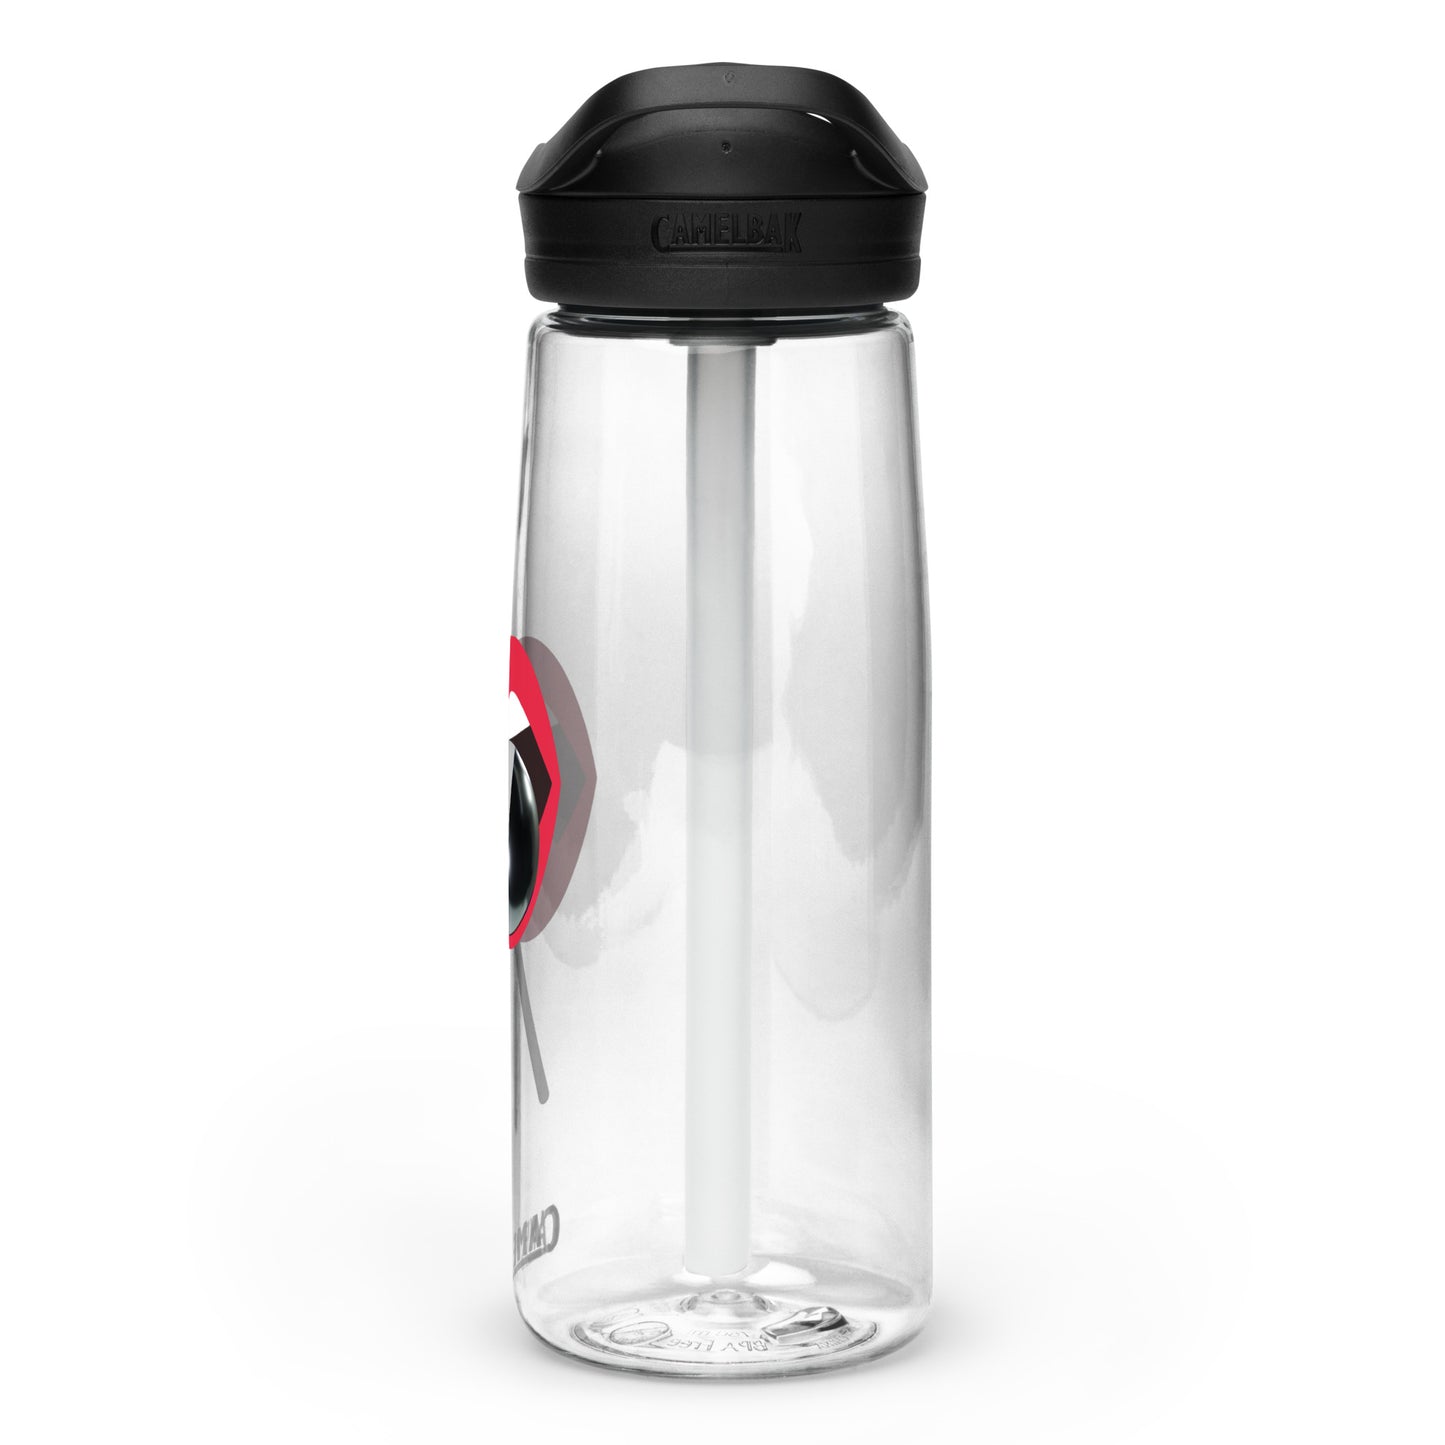 Sports water bottle Lolly Pop - CineQuips